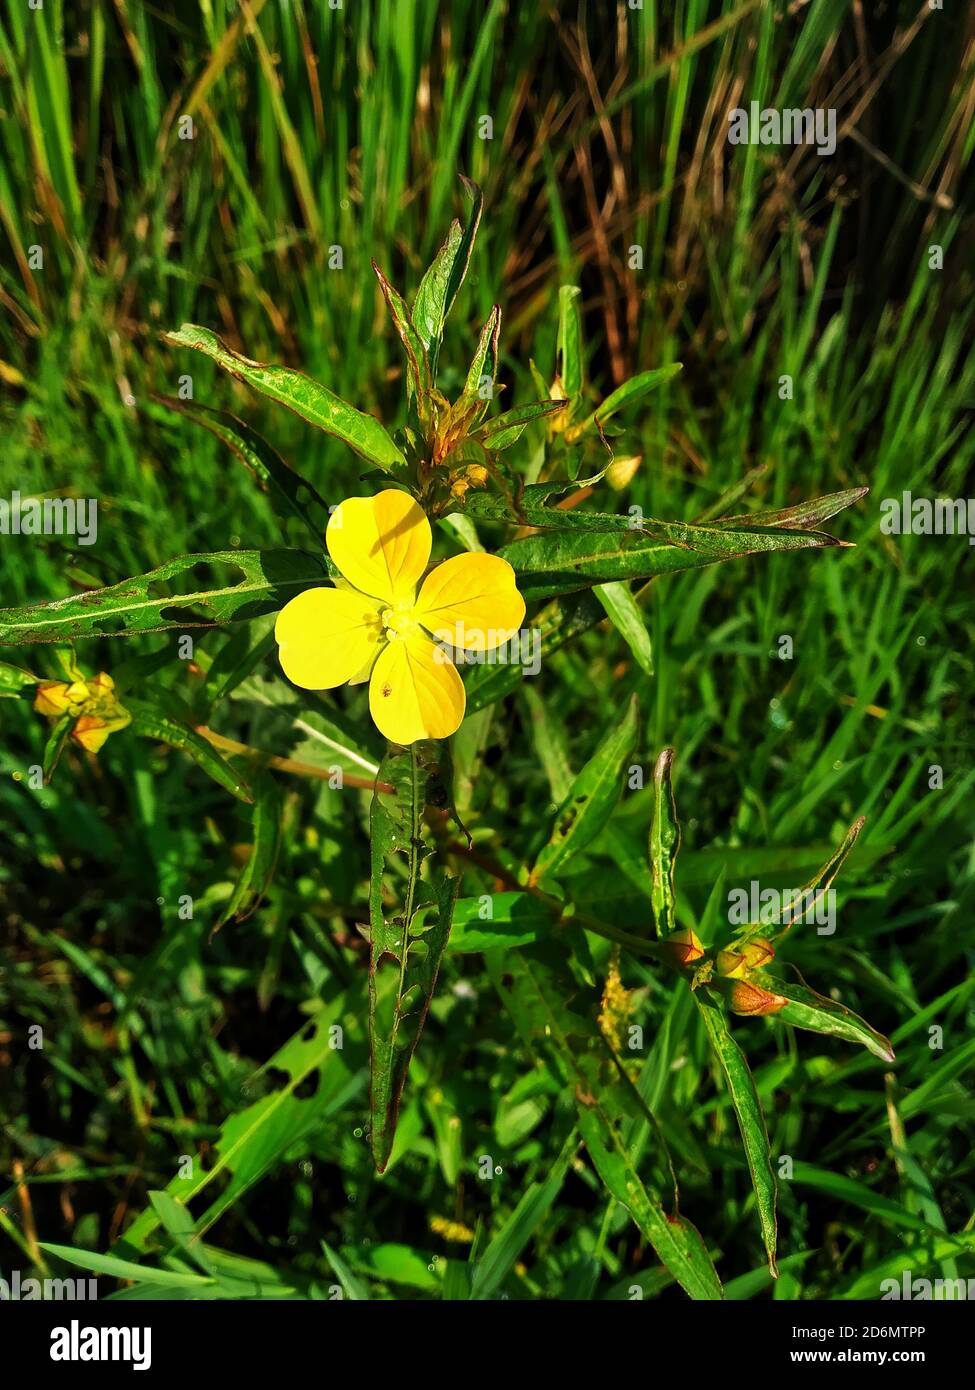 Gelbe Blume Ludwigia octovalvis ist eine krautige Pflanzenart. Ludwigia octovalvis gehört zur Gattung ludwigior, und die Familie downyx Pflanzen. Stockfoto